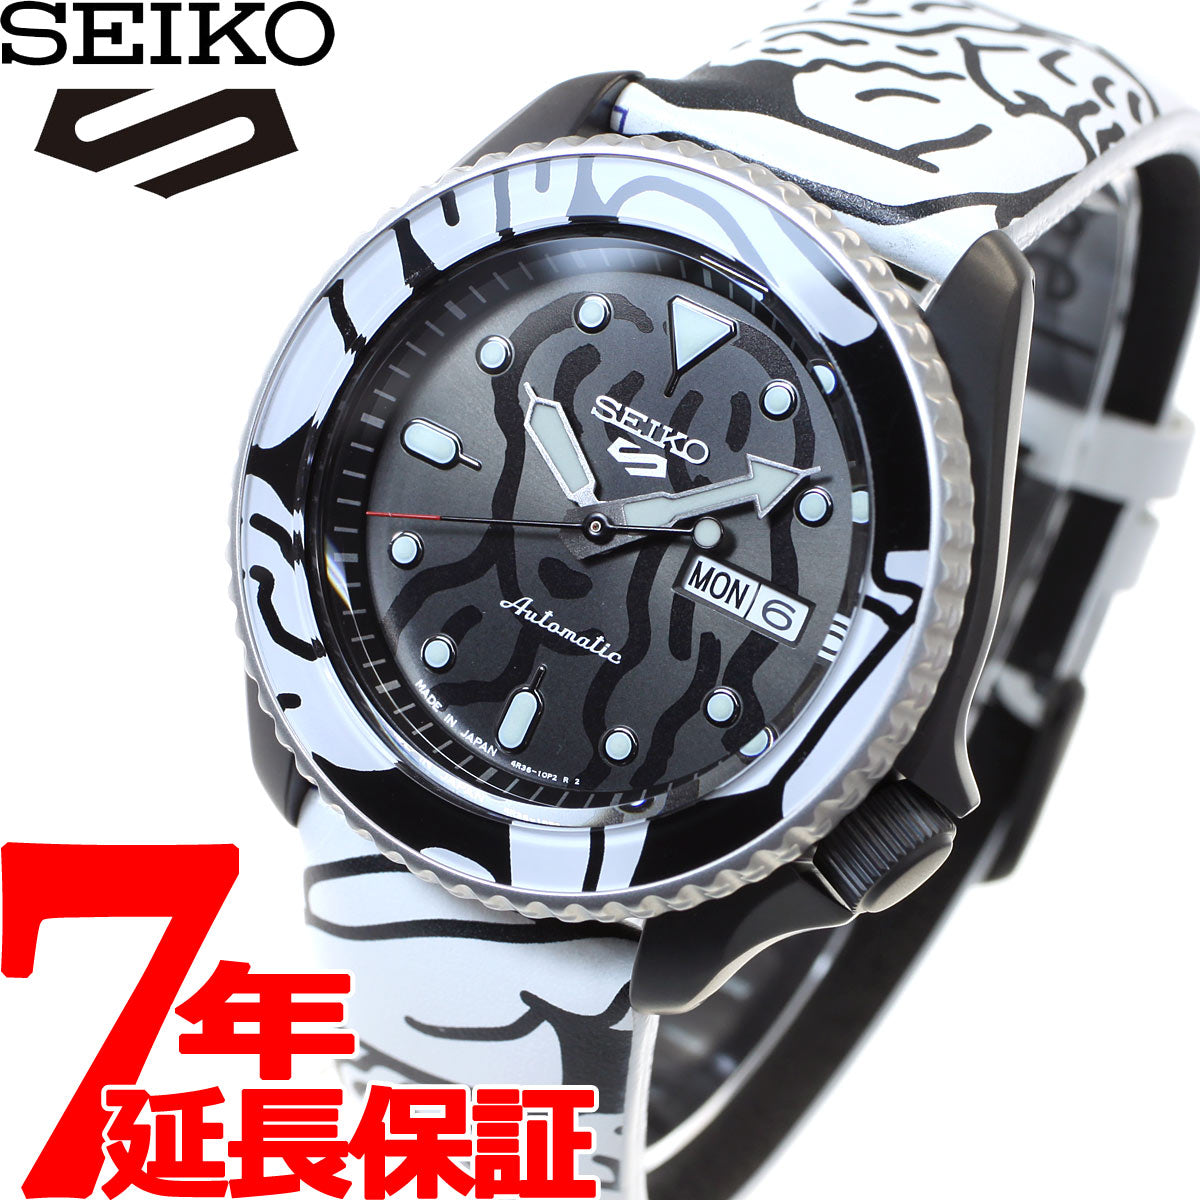 セイコー5 スポーツ SEIKO 5 SPORTS × AUTO MOAI オートモアイ コラボ 限定モデル 自動巻き メカニカル 腕時計 –  neel selectshop